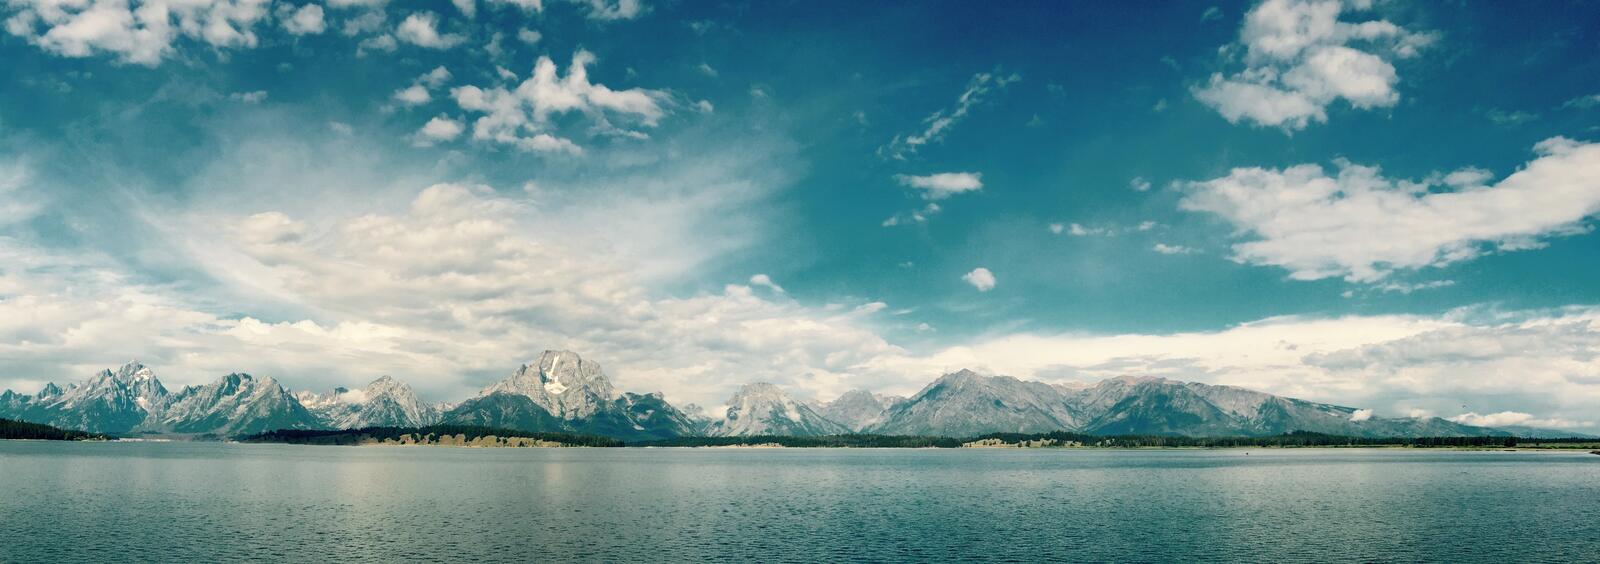 免费照片一个大的景观，显示了一个湖泊和被雪覆盖的山脉